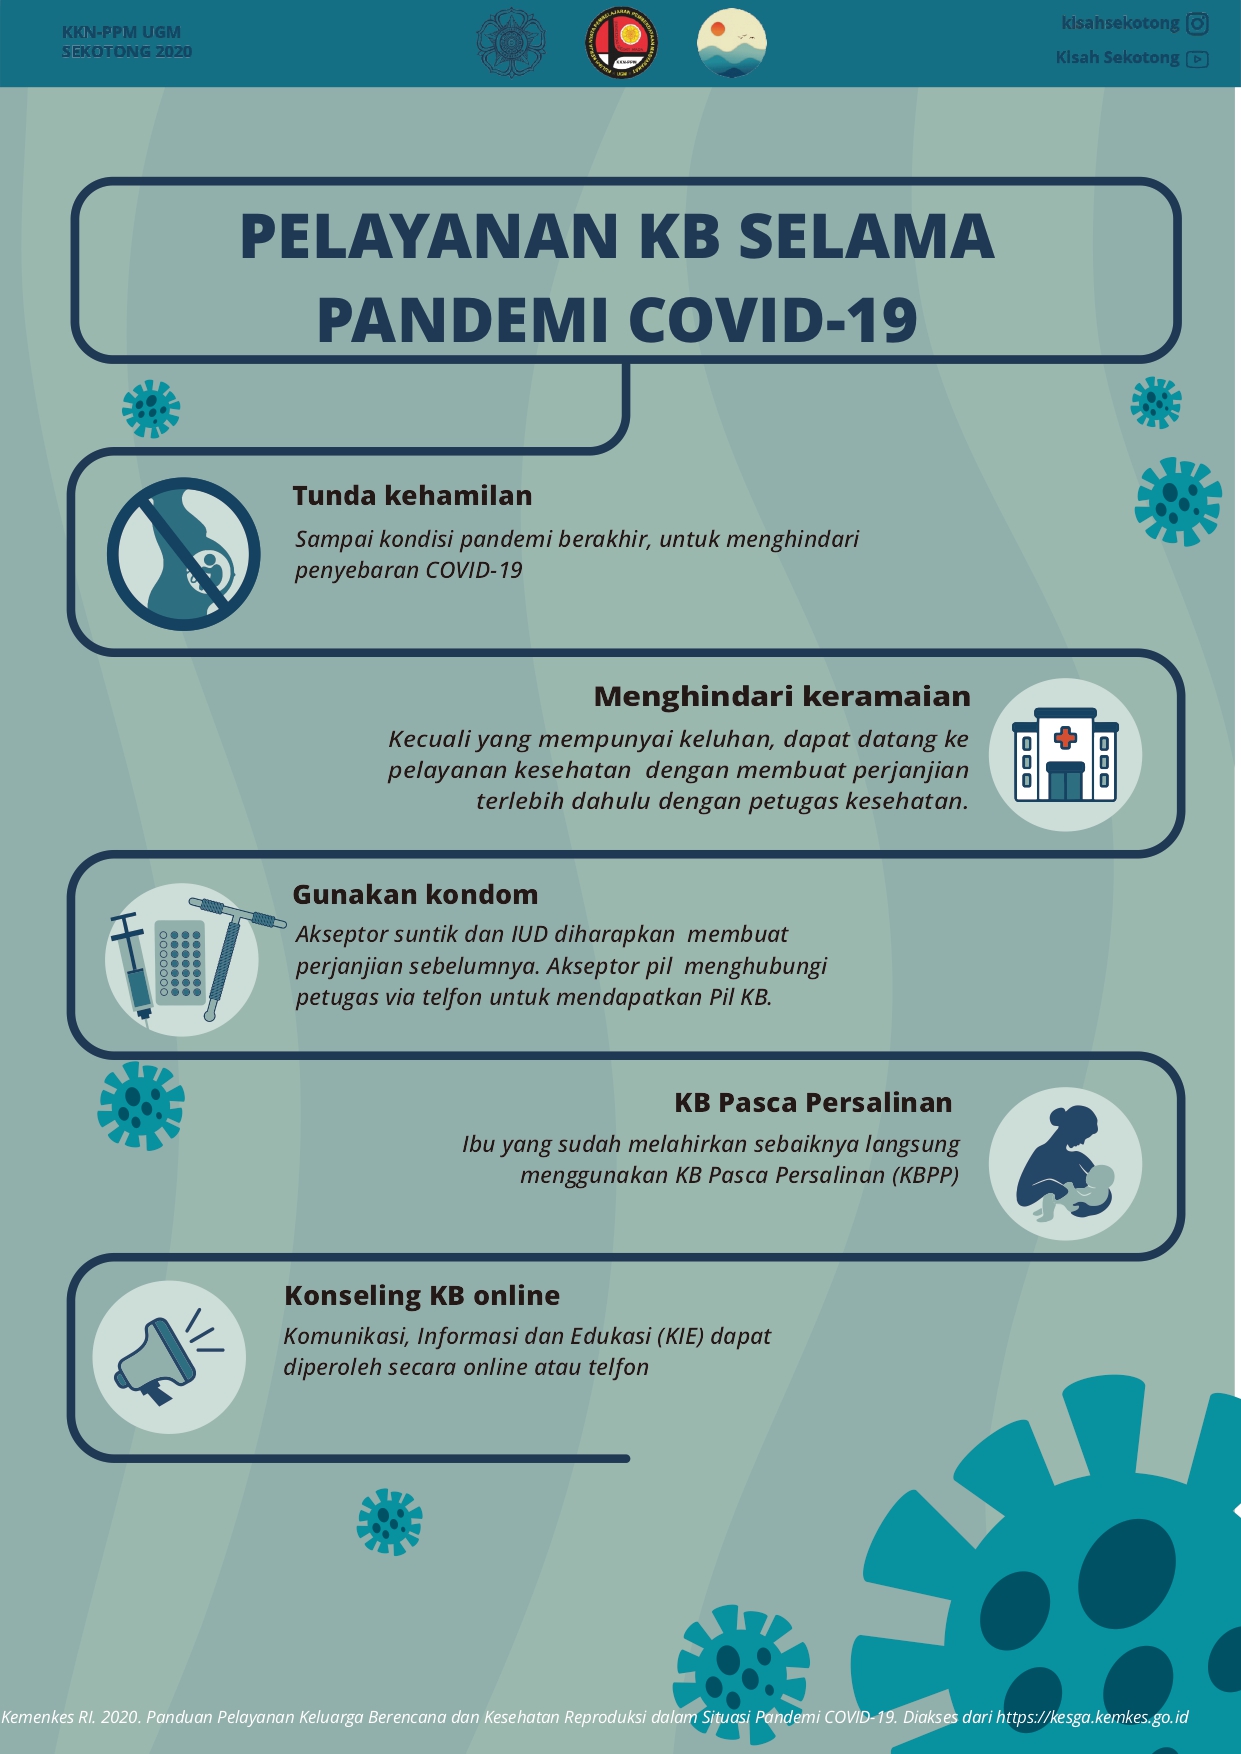 Pelayanan KB selama Pandemi Covid19 – Kisah Sekotong